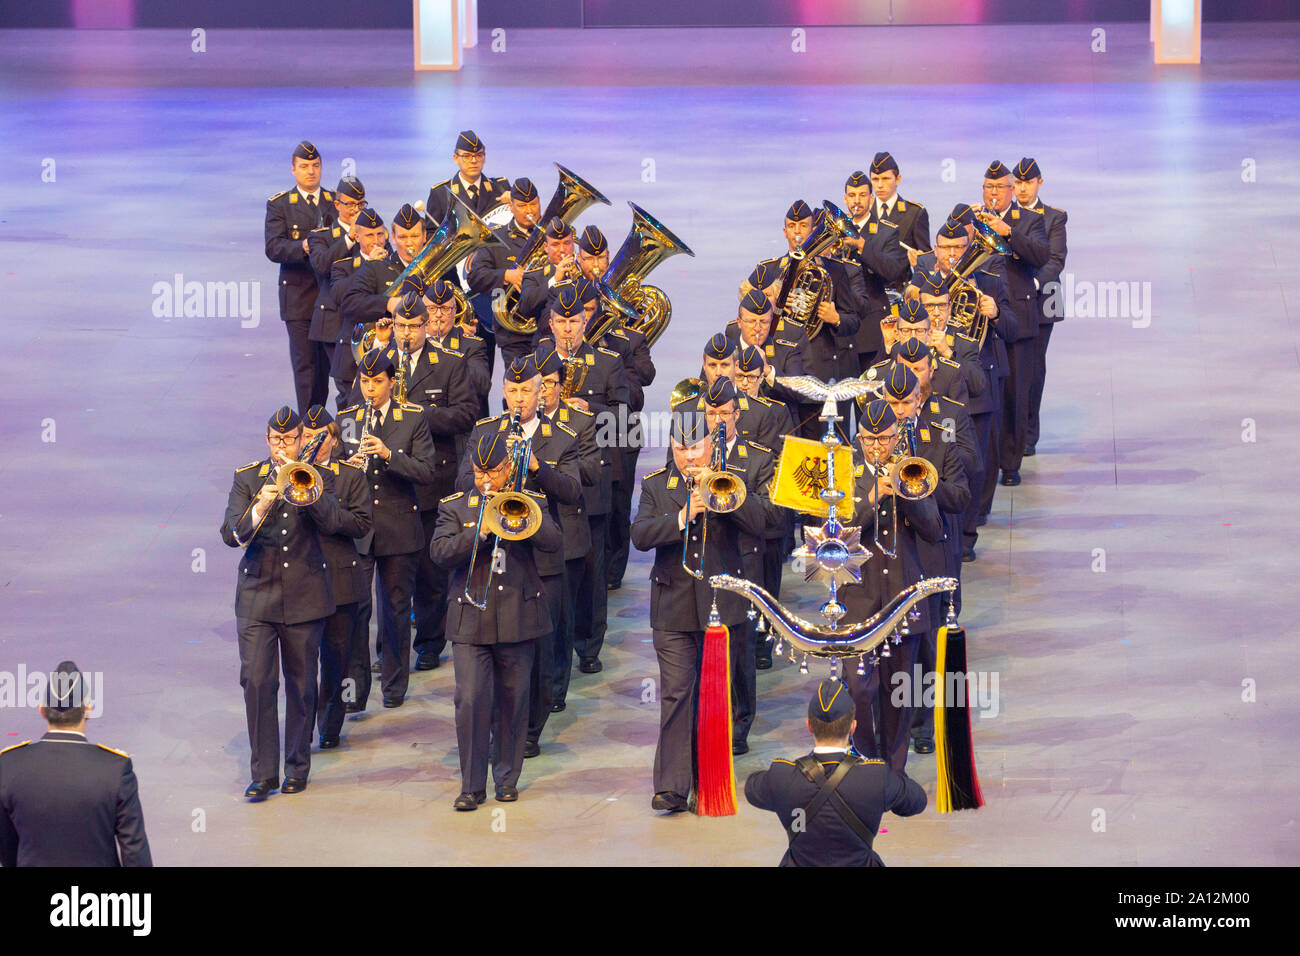 Luftwaffenmusikkorps Münster beim Musikfest der Bundeswehr, Internationales Militär Tattoo im ISS Dome. Düsseldorf, 21.09.2019 Foto Stock